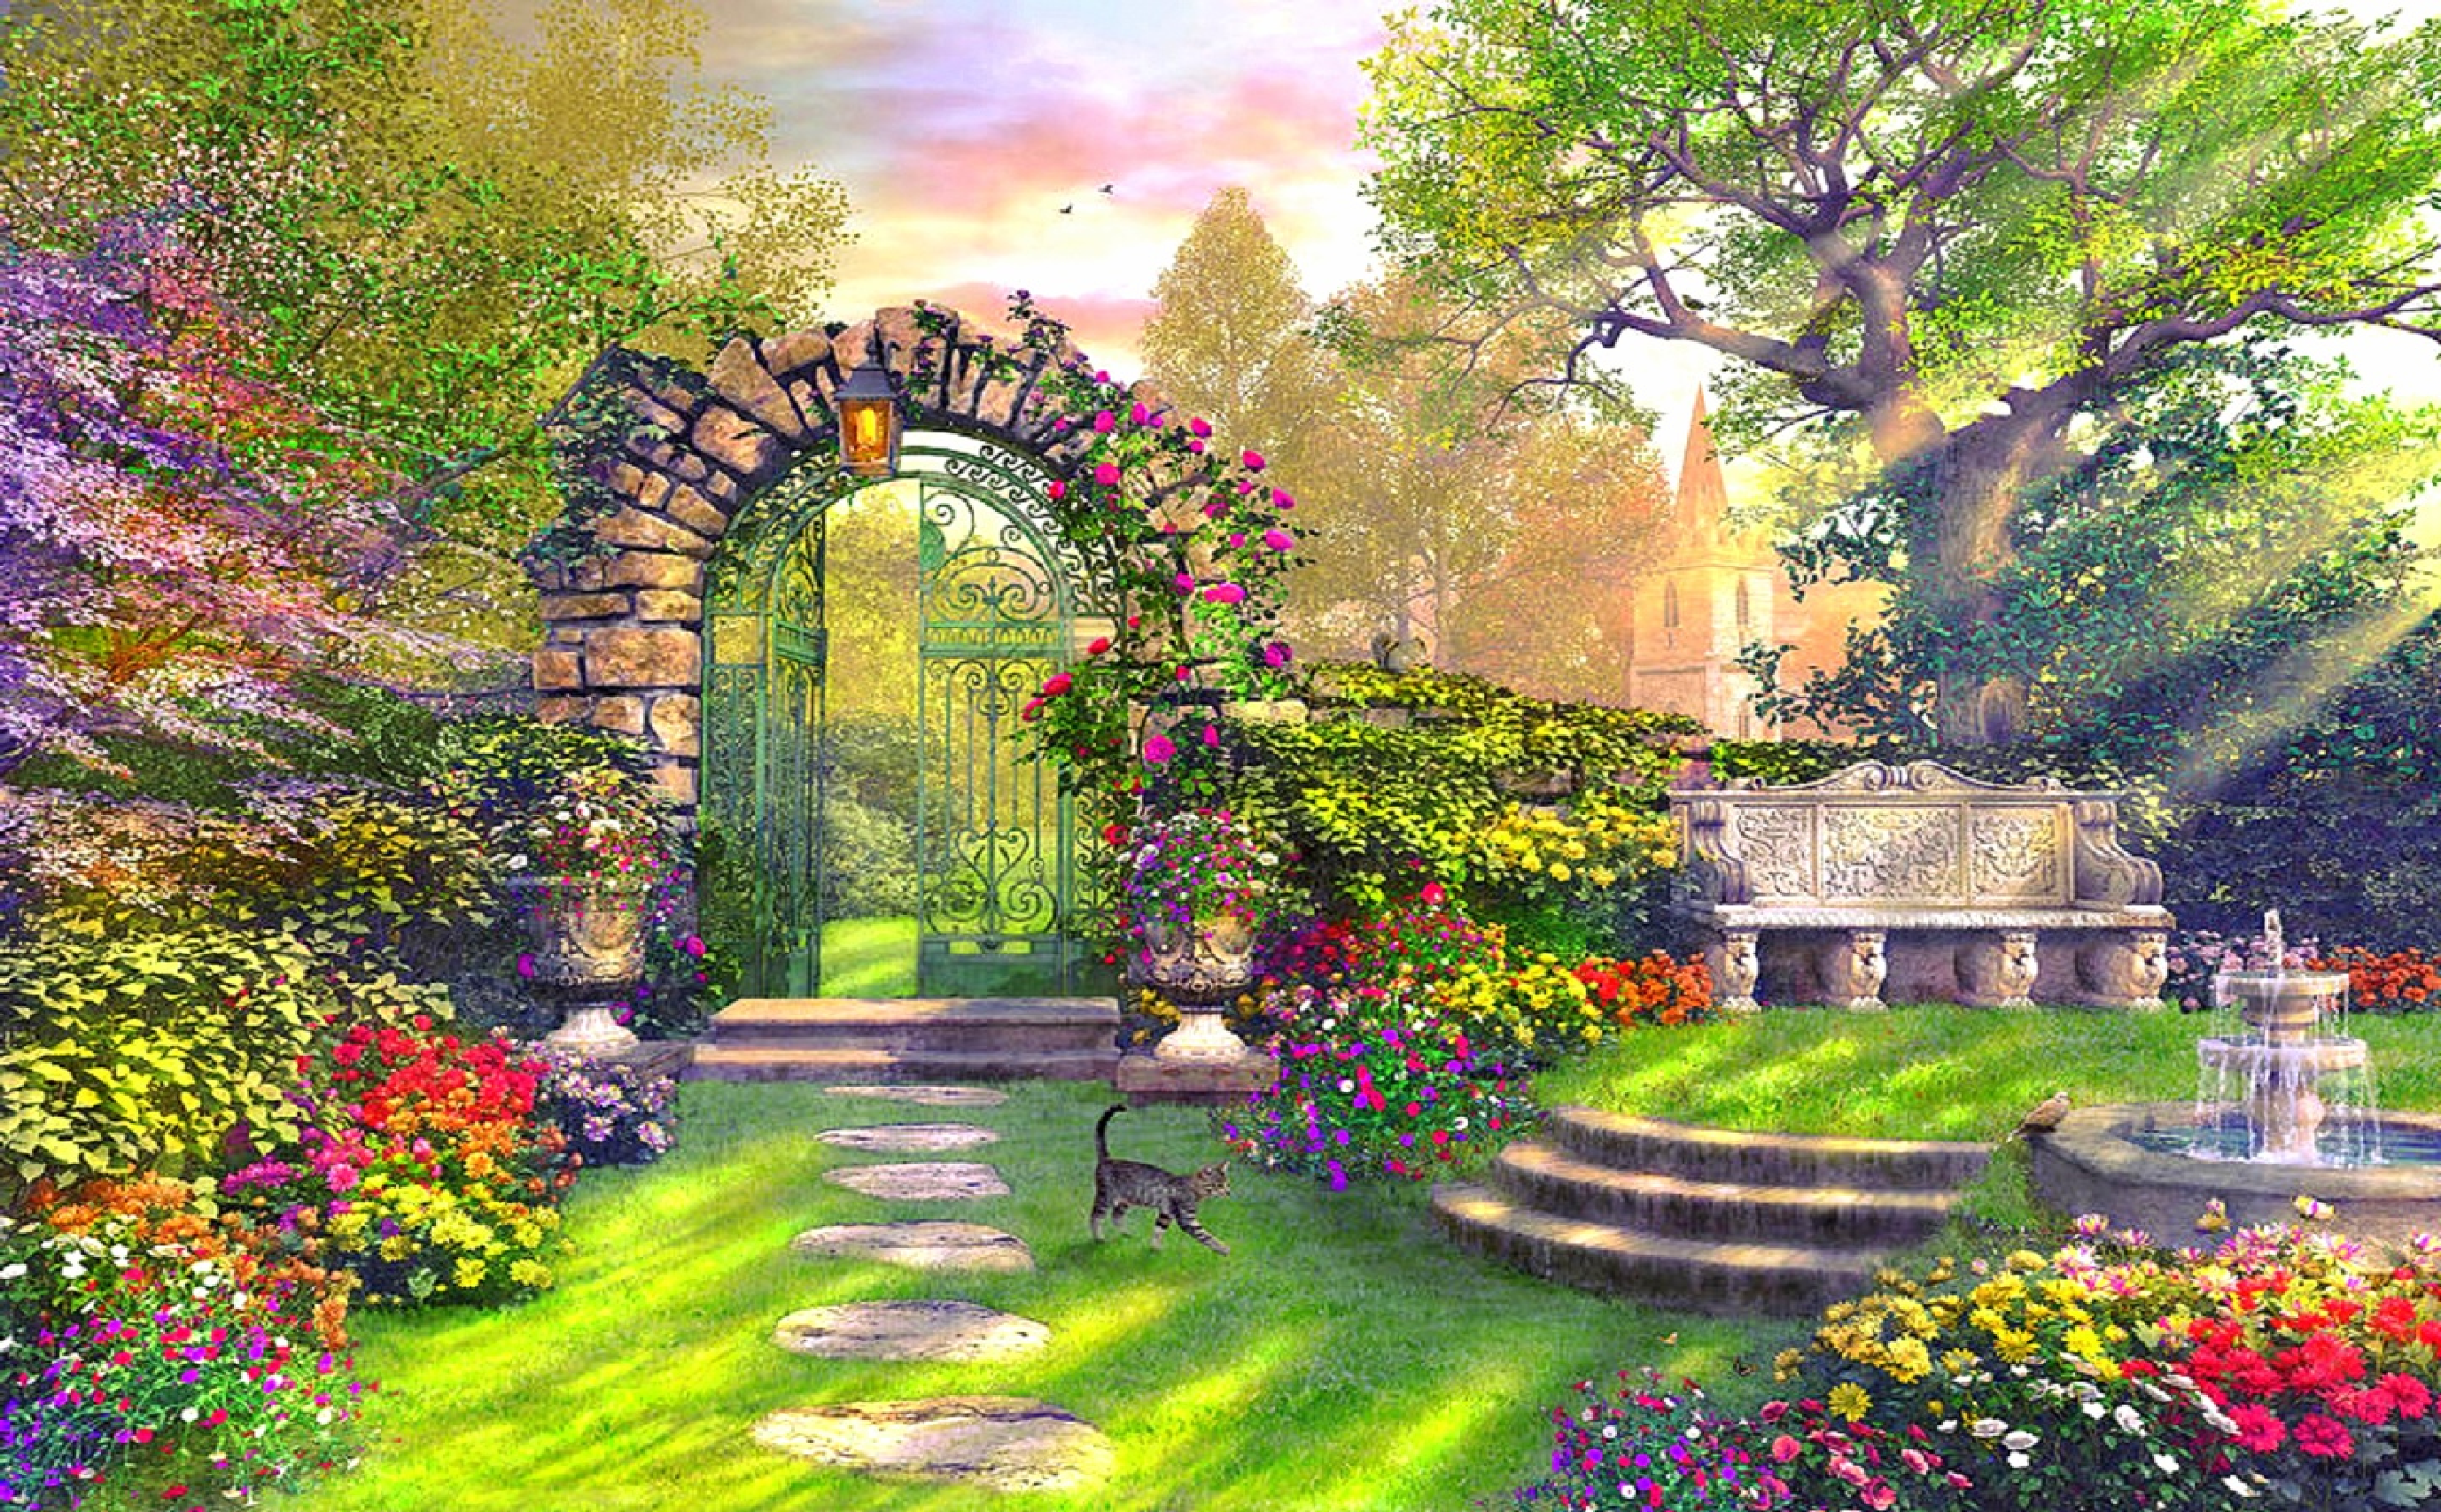 Fantasy Garden Background 01 by Lady-Angelia-13 on DeviantArt